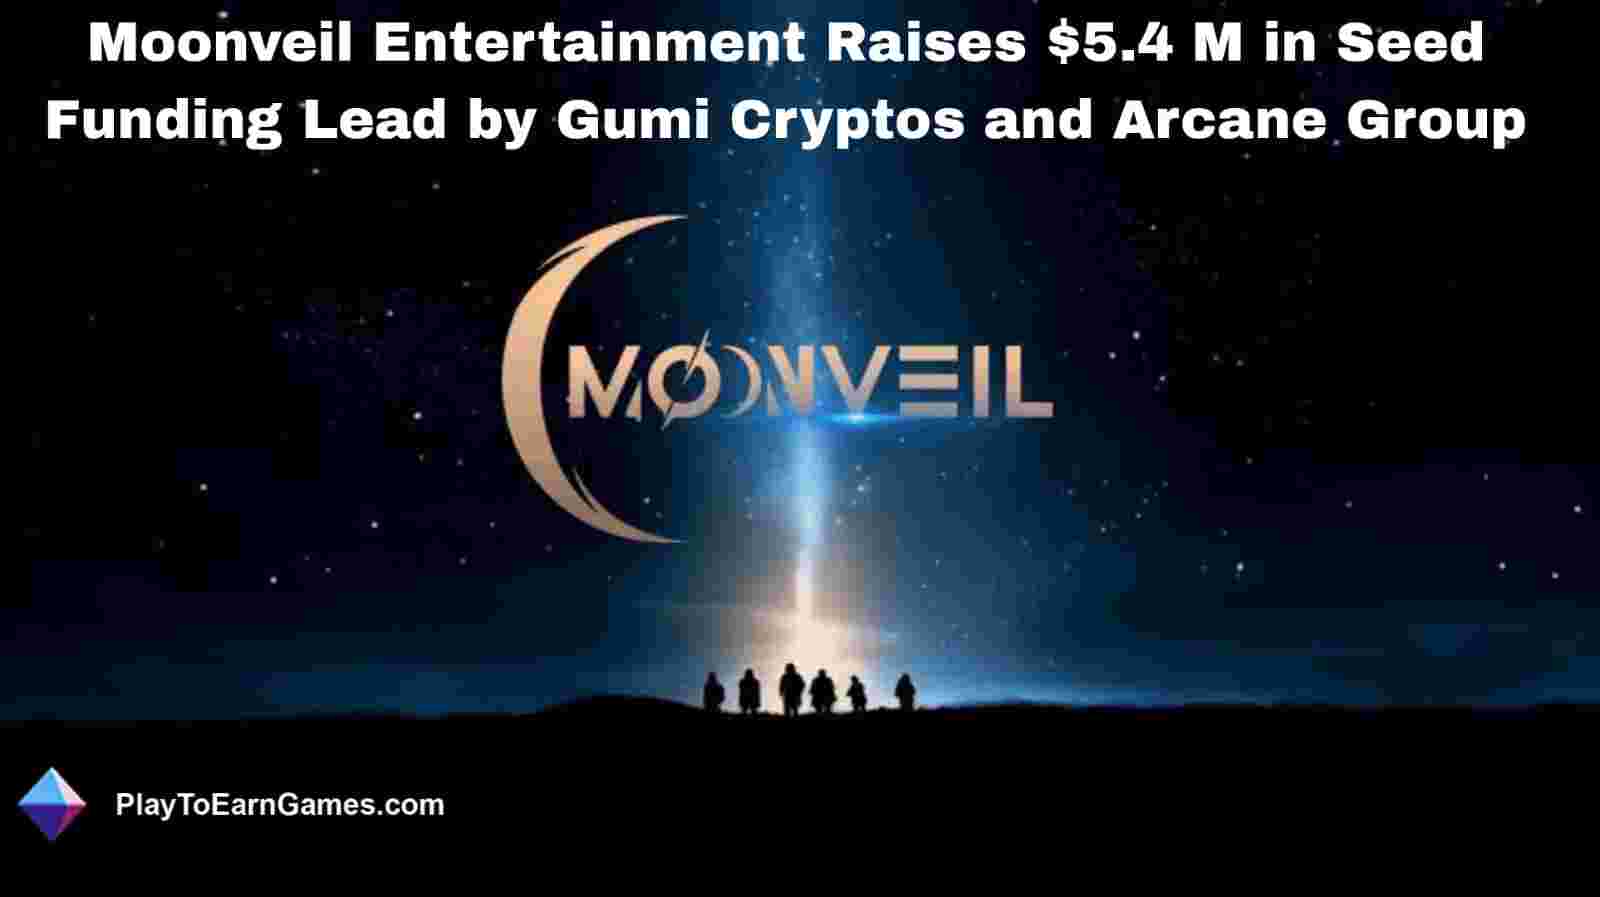 Einblick in die Web3-Integration von Moonveil Entertainment unter der Leitung von MJ Wong, dem ehemaligen Leiter von Riot Games